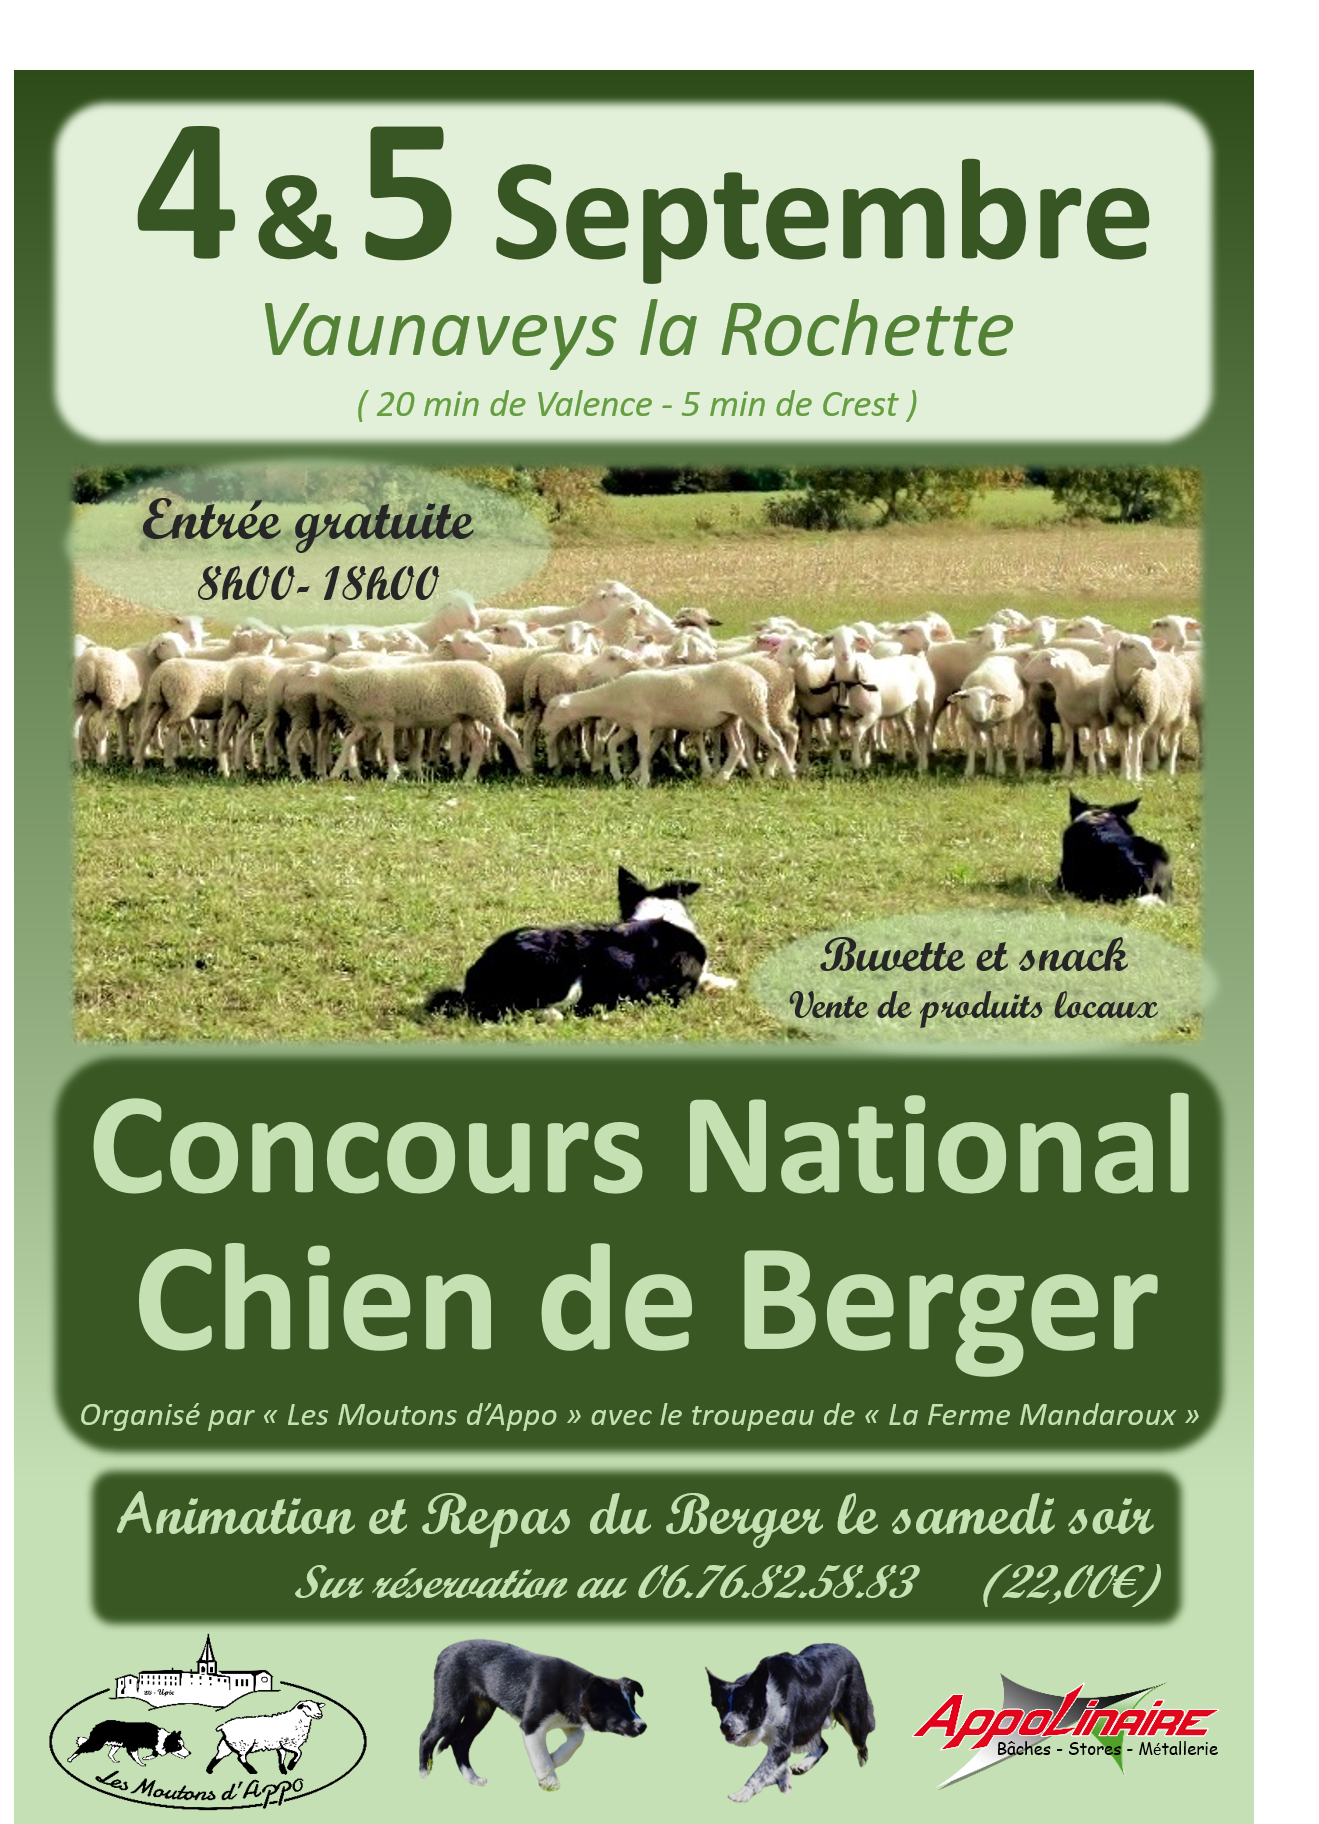 Chiens de bergers : concours national les 4 et 5 septembre à Vaunaveys-la-Rochette